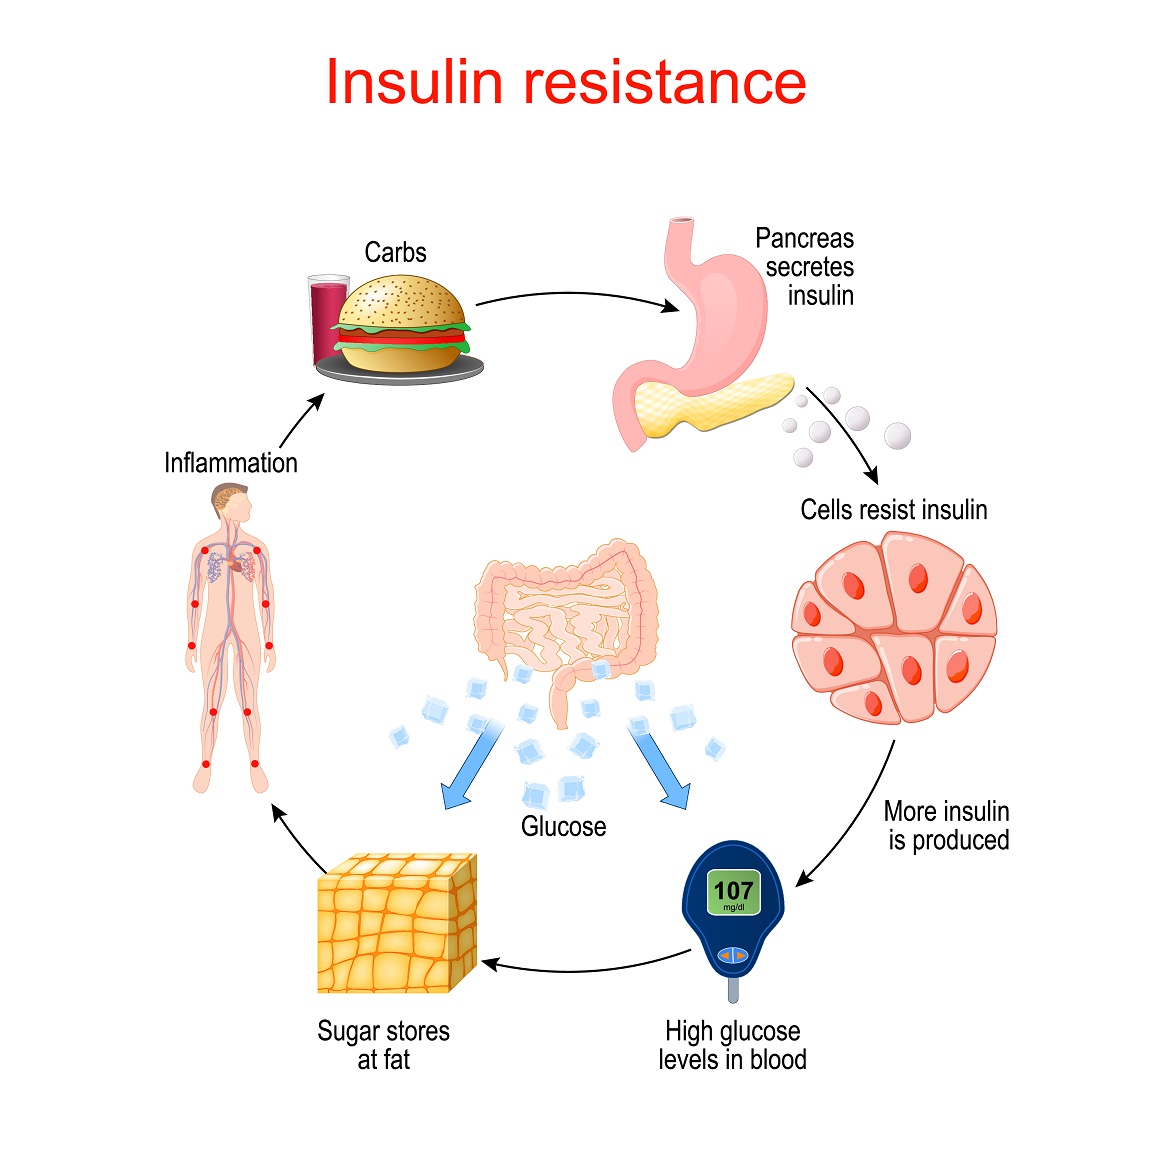 Ako tijelo postane otporno na inzulin, to otežava ulazak glukoze u stanice, što dovodi do visoke razine šećera u krvi